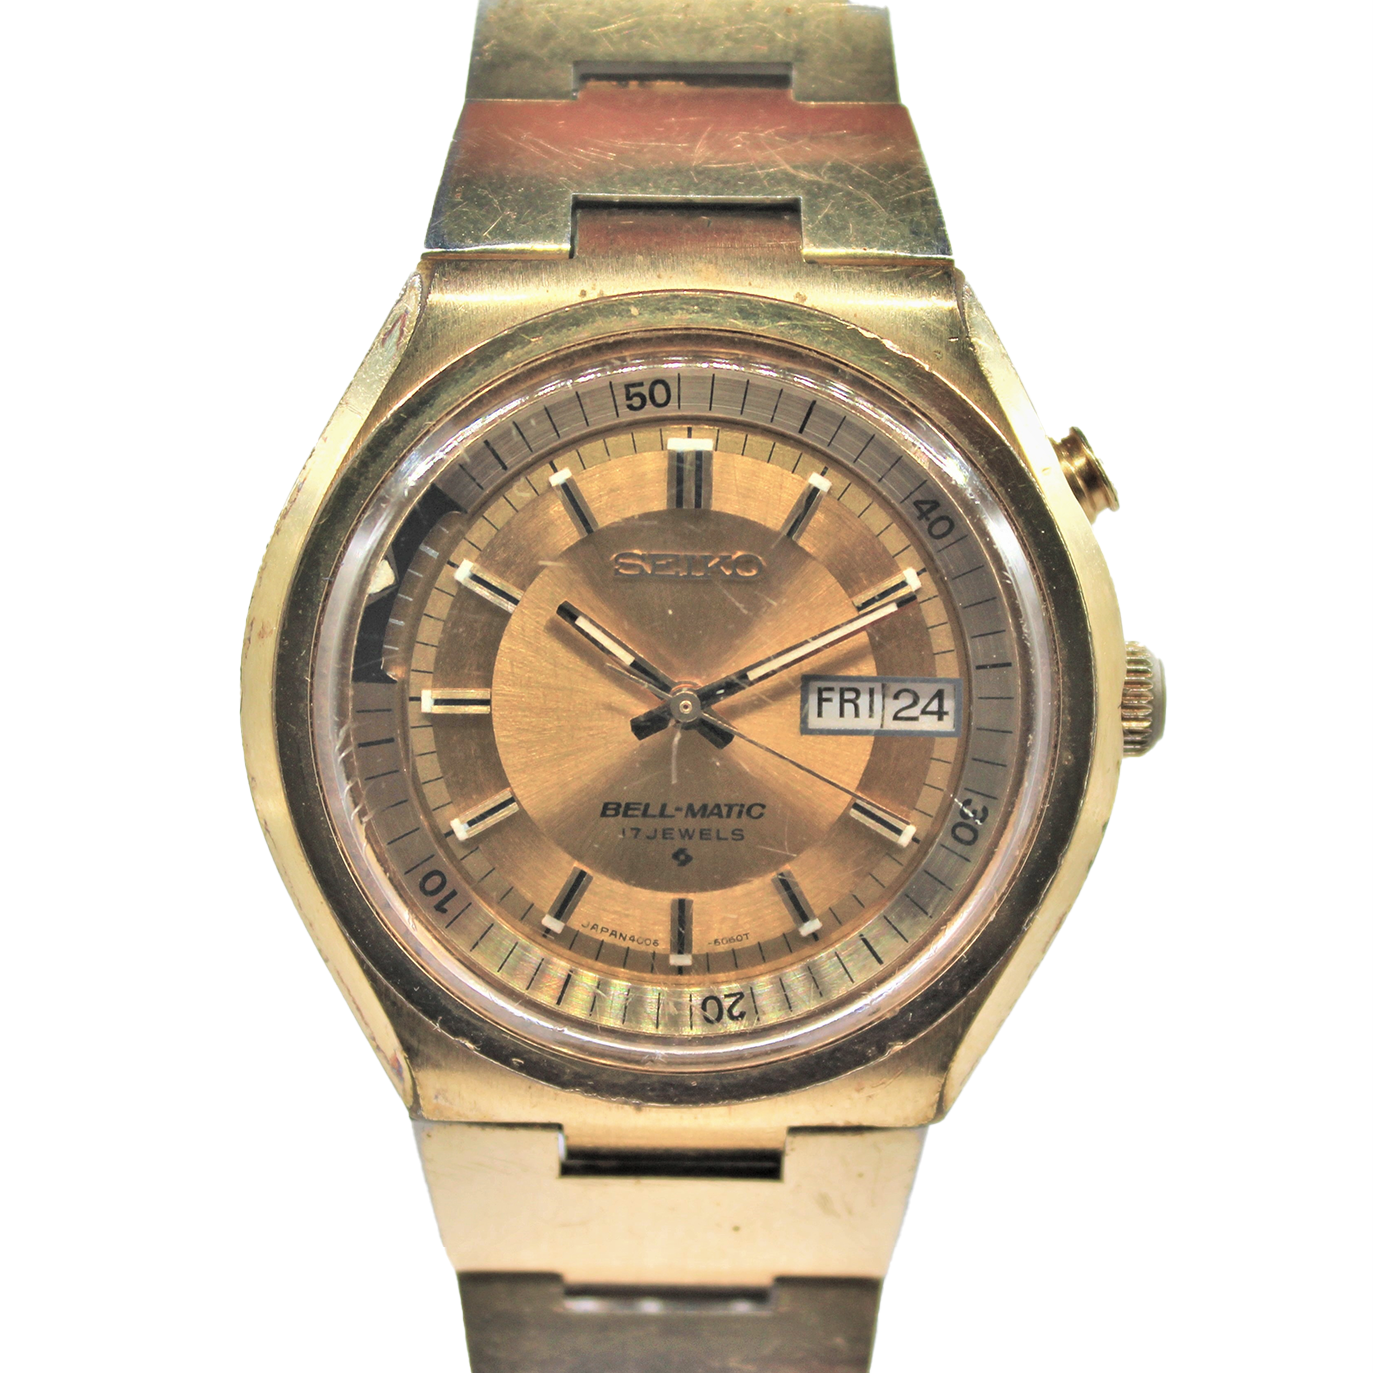 Vintage Seiko Bell-Matic 4006-6040 Original Bracelet - Toronto Vintage  Watches - Vintage Seiko passion